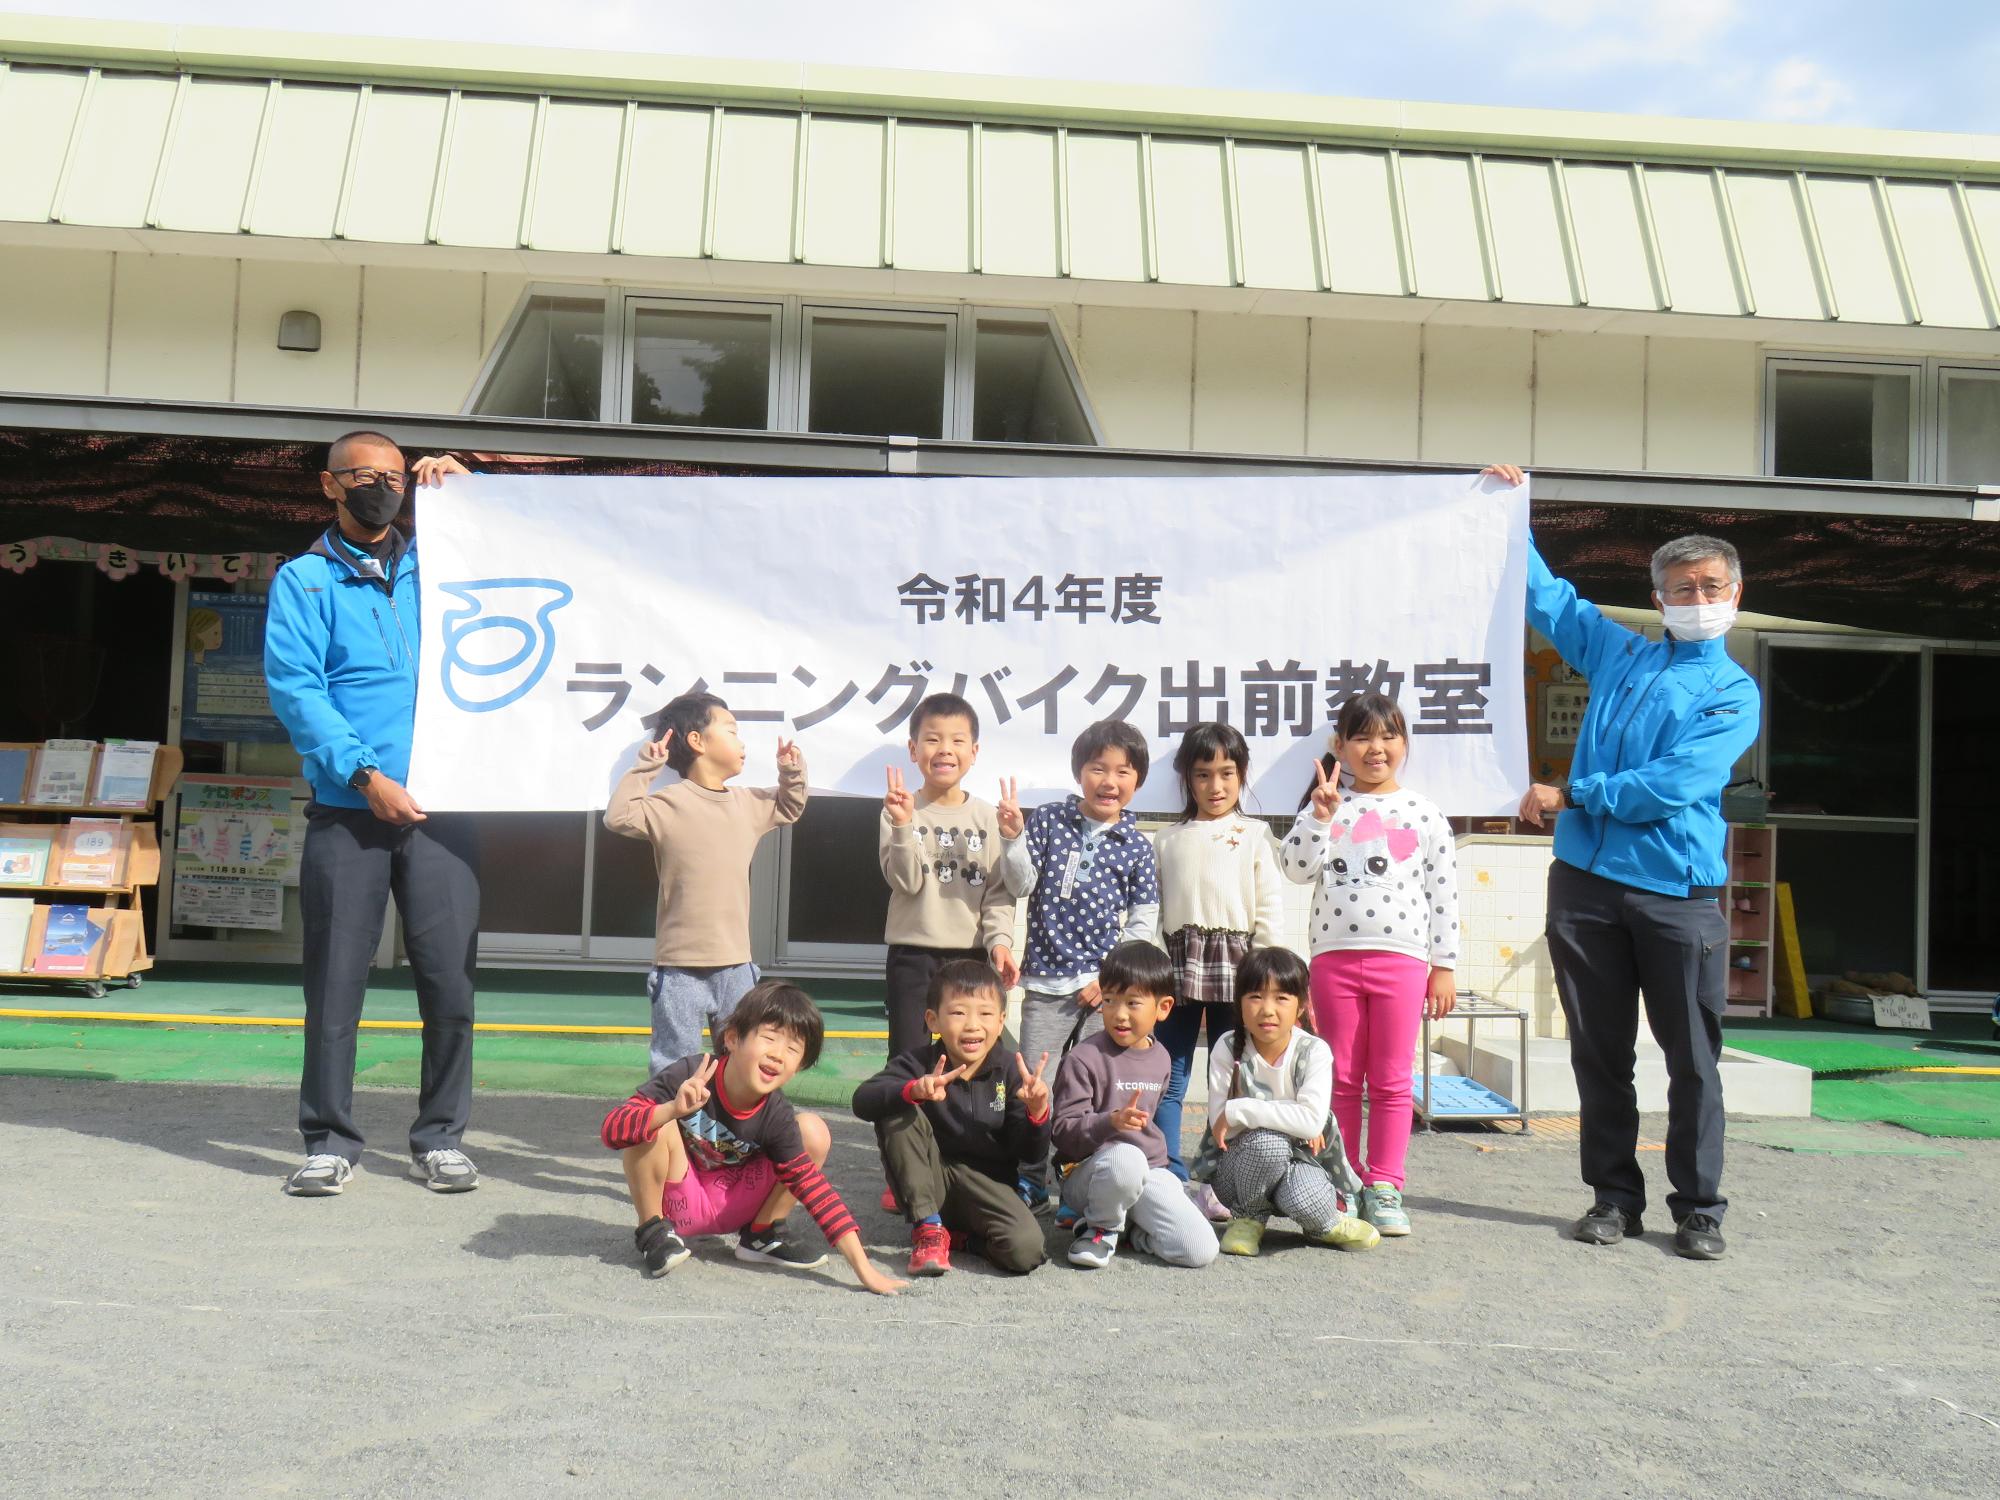 令和4年度ランニングバイク教室と書かれた幕の前で熊坂こども園の9名の子供たちが並んでいる集合写真